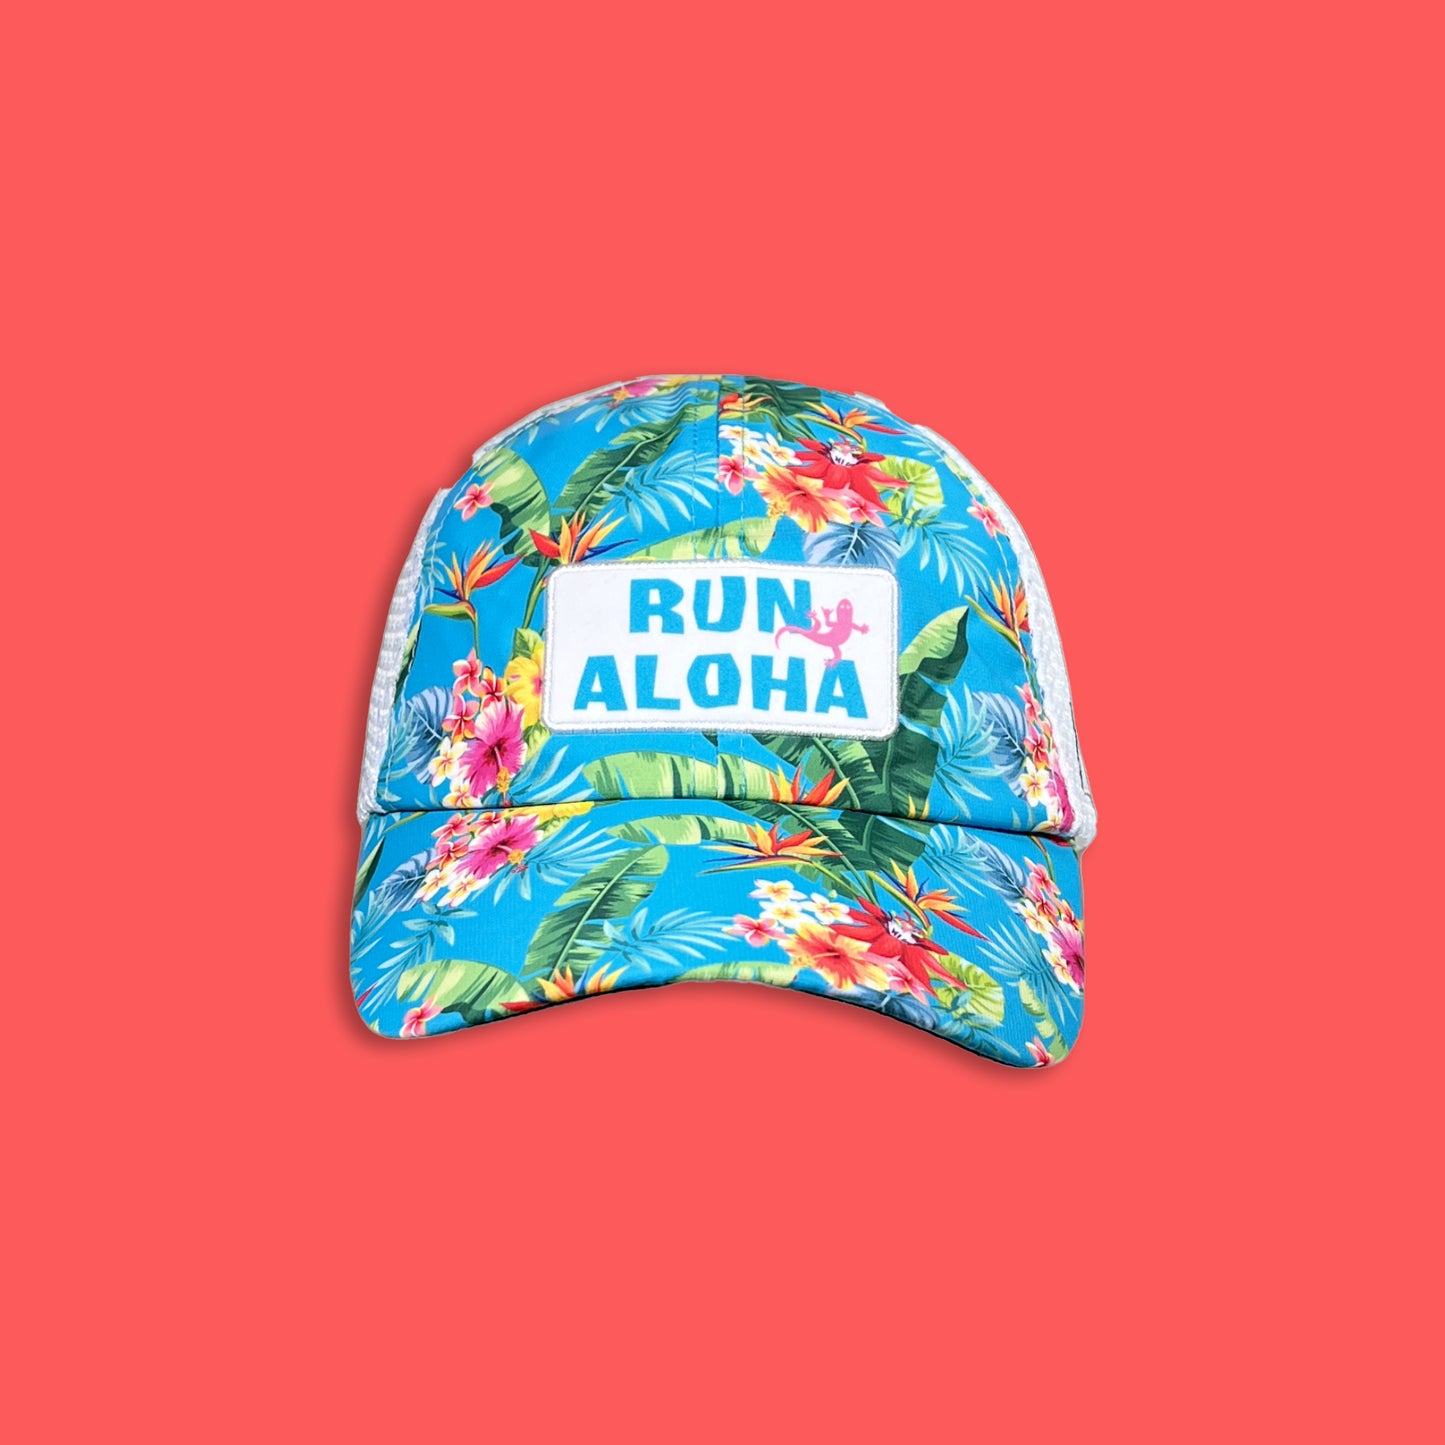 Endurance Running Hat - Run Aloha